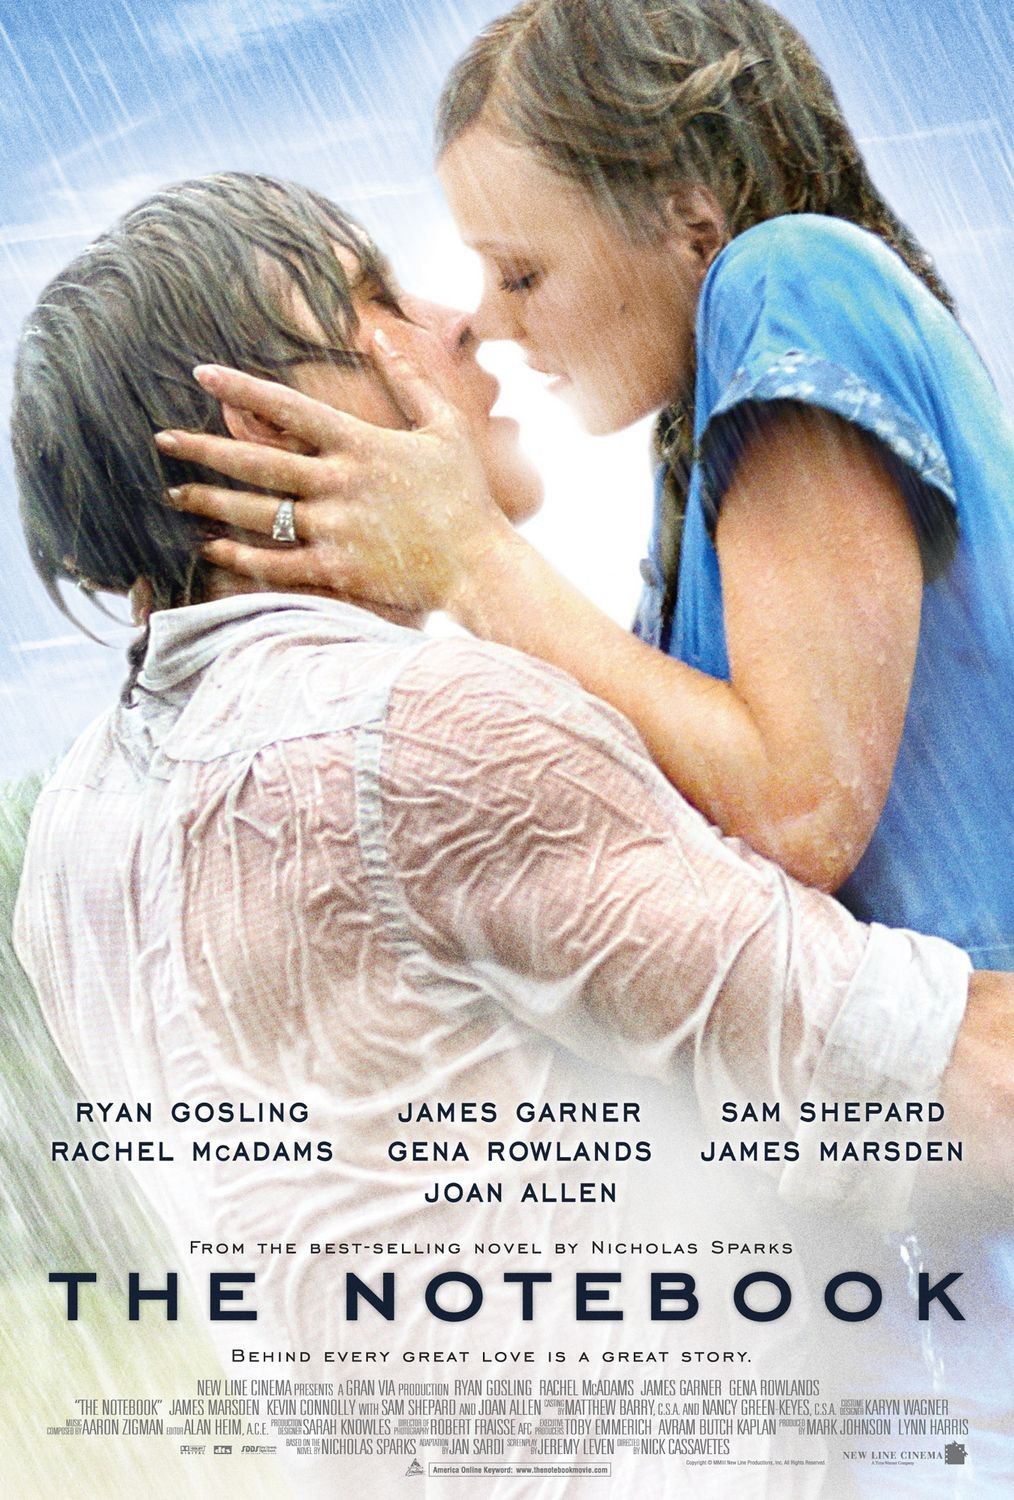 10 Film Romantis Terbaik yang Wajib Kamu Tonton, Bikin Baper!